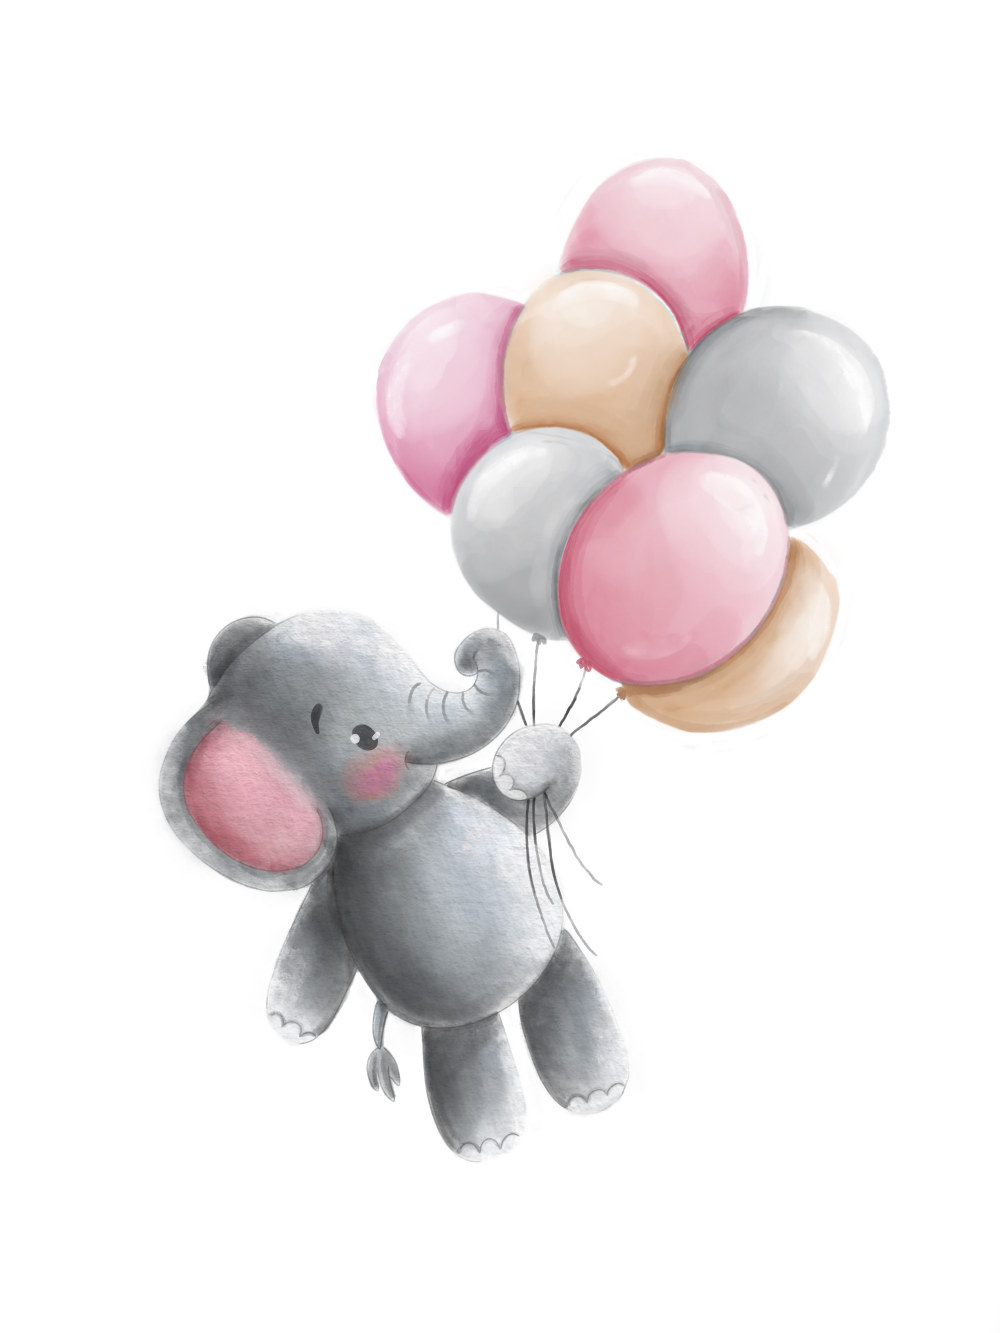 Obraz nebo plakát slon a růžové balónky, bílé pozadí jako dárek do dětského pokoje nebo pro narození dítěte | ZivotniOkamziky.cz